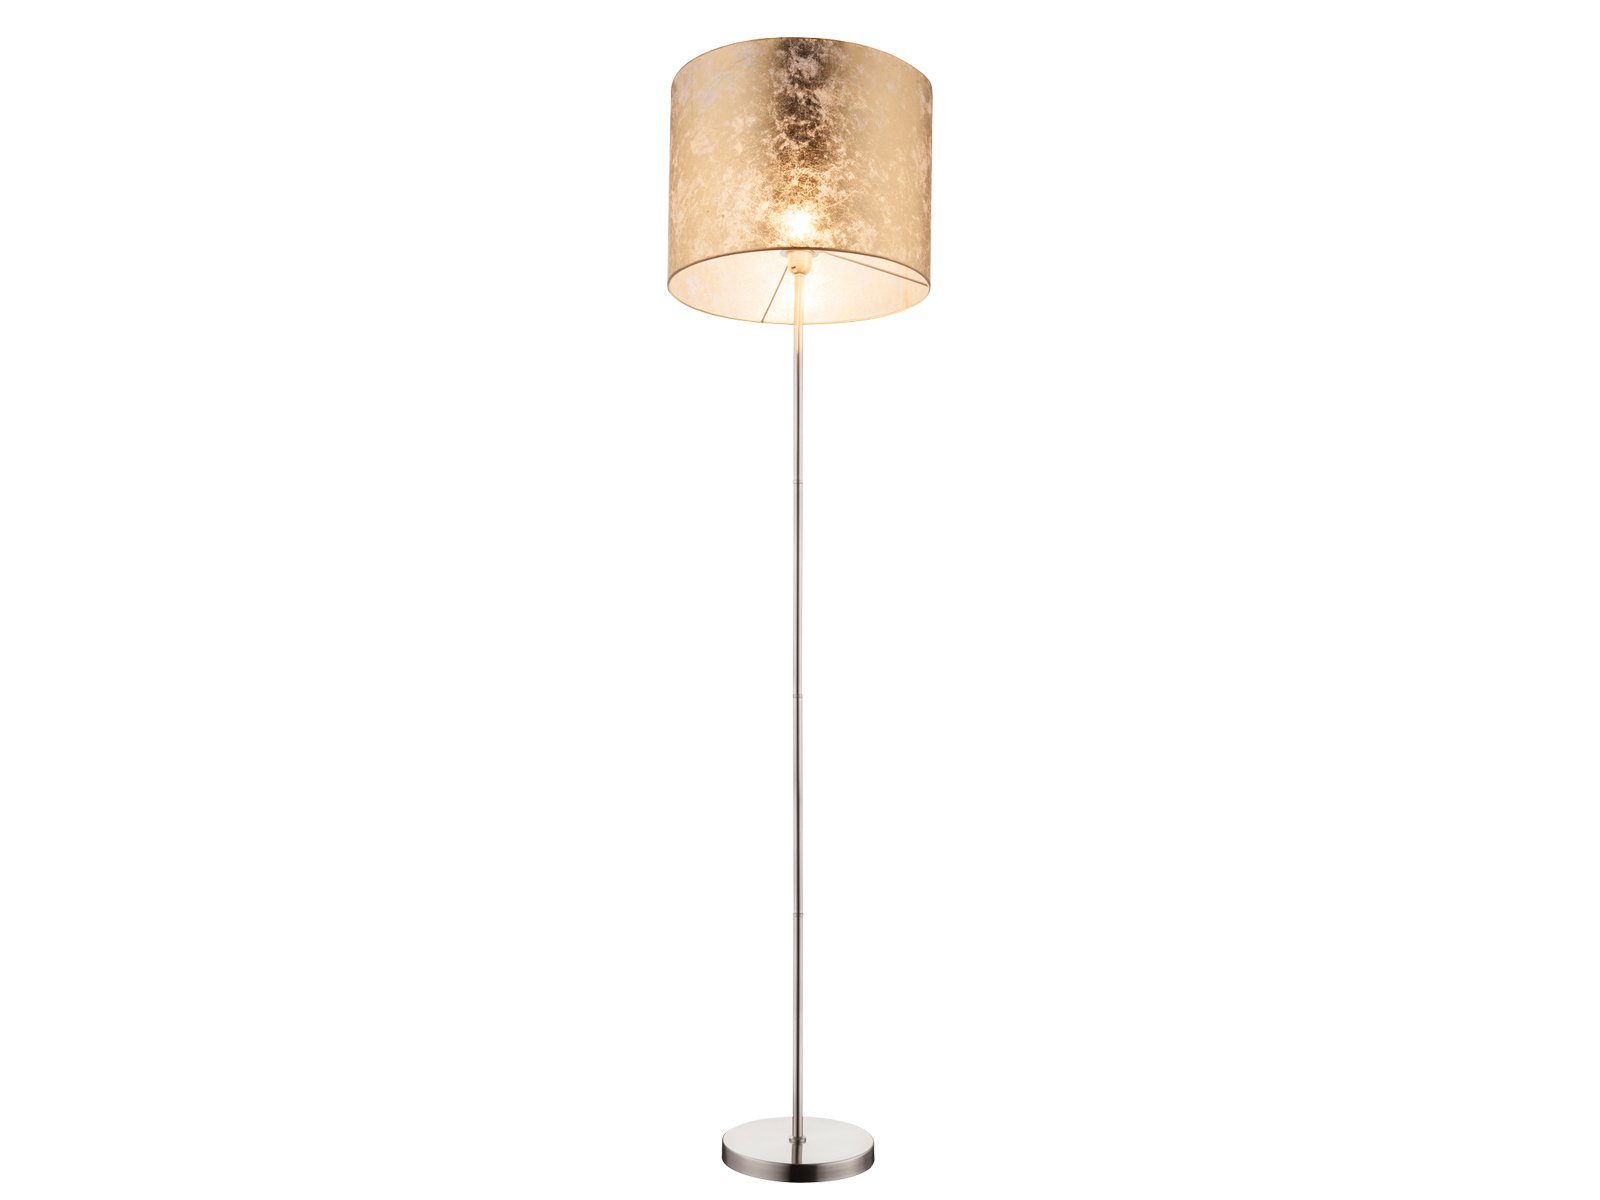 dimmbar, Designer-lampen meineWunschleuchte Lampenschirm Stehlampe, 160cm ist Golden warmweiß, wechselbar, moderne über LED Leuchte H LED den ausgefallene Stoff Fußschalter